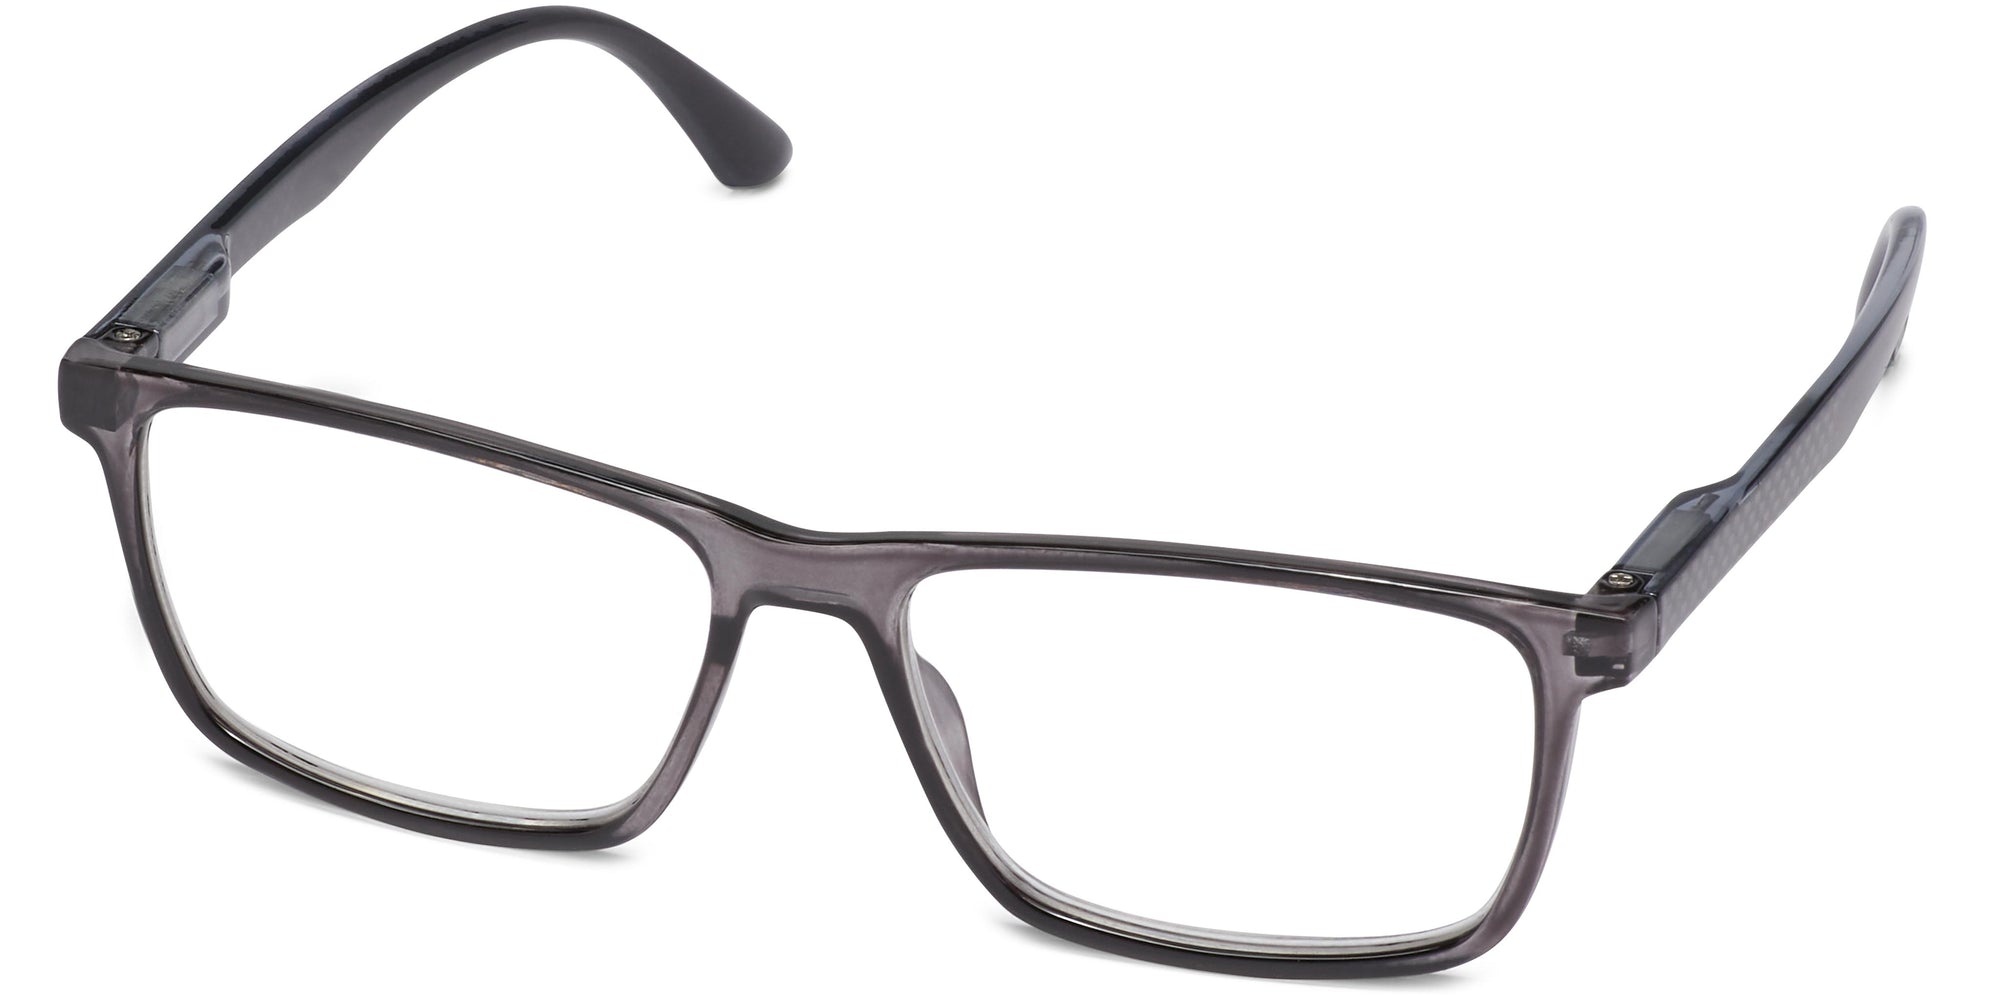 Hudson - Gray / 1.25 - Reading Glasses